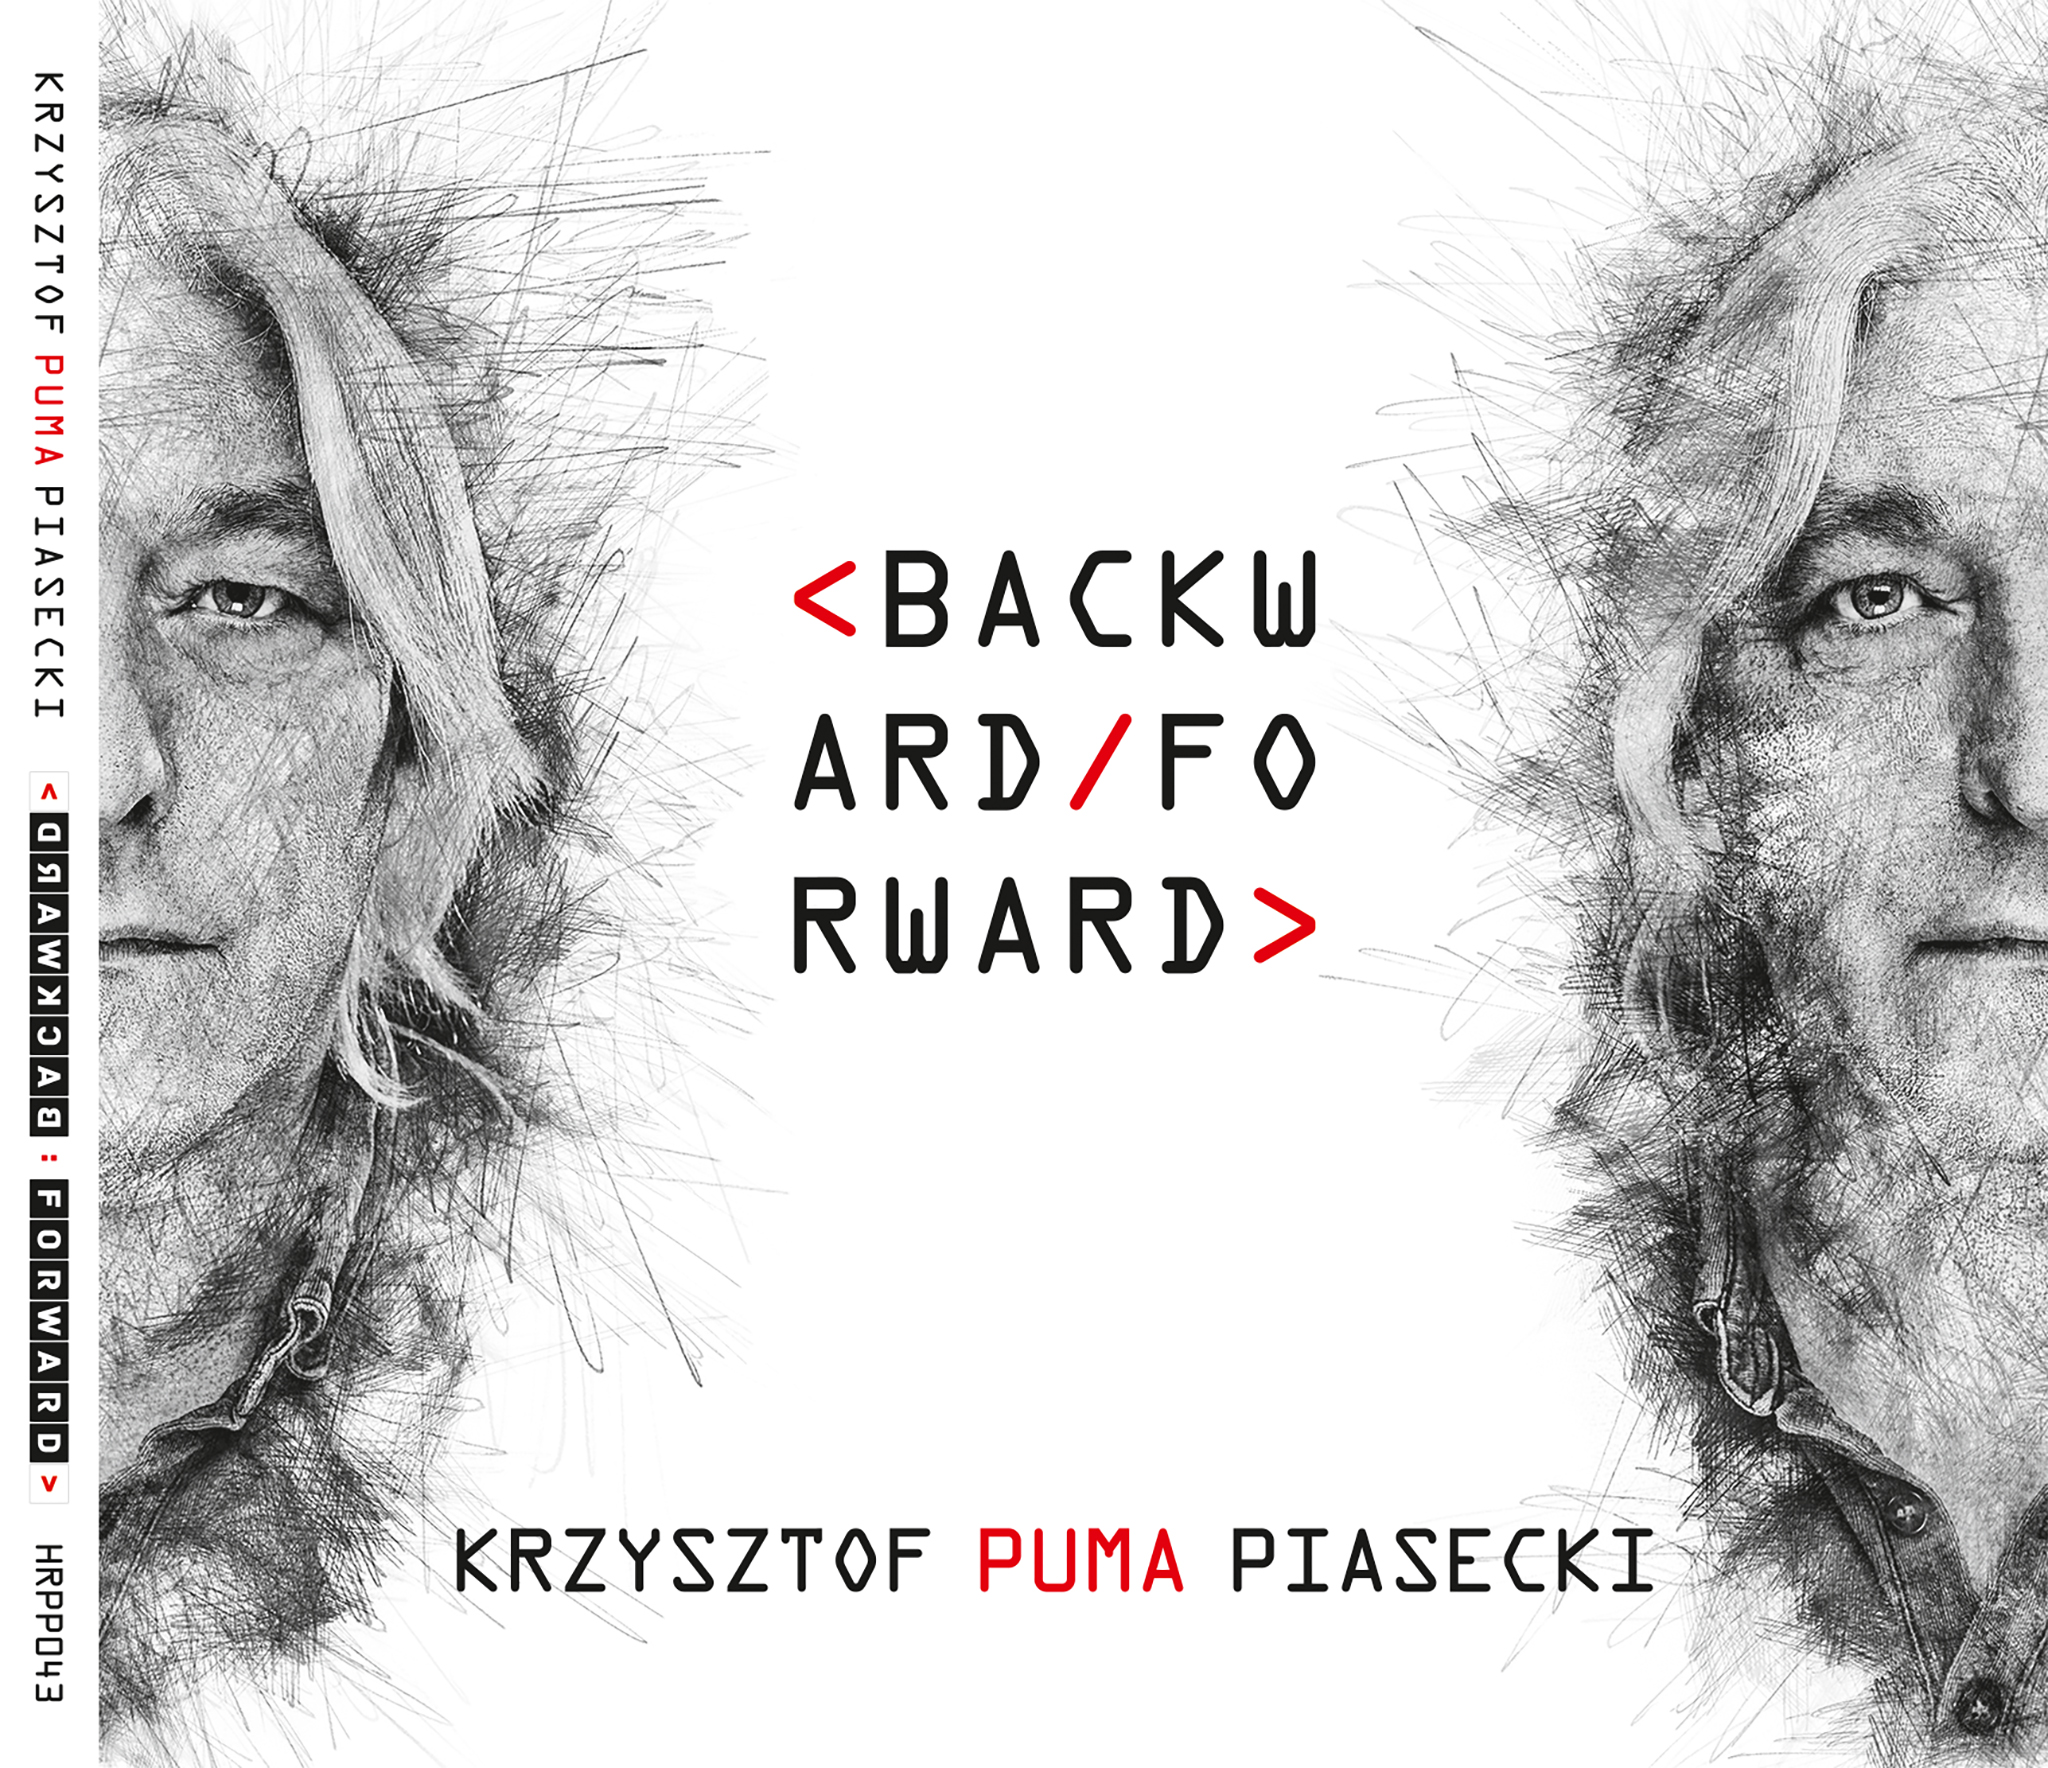 PUMA - BACKWARD-FORWARD - okładka front